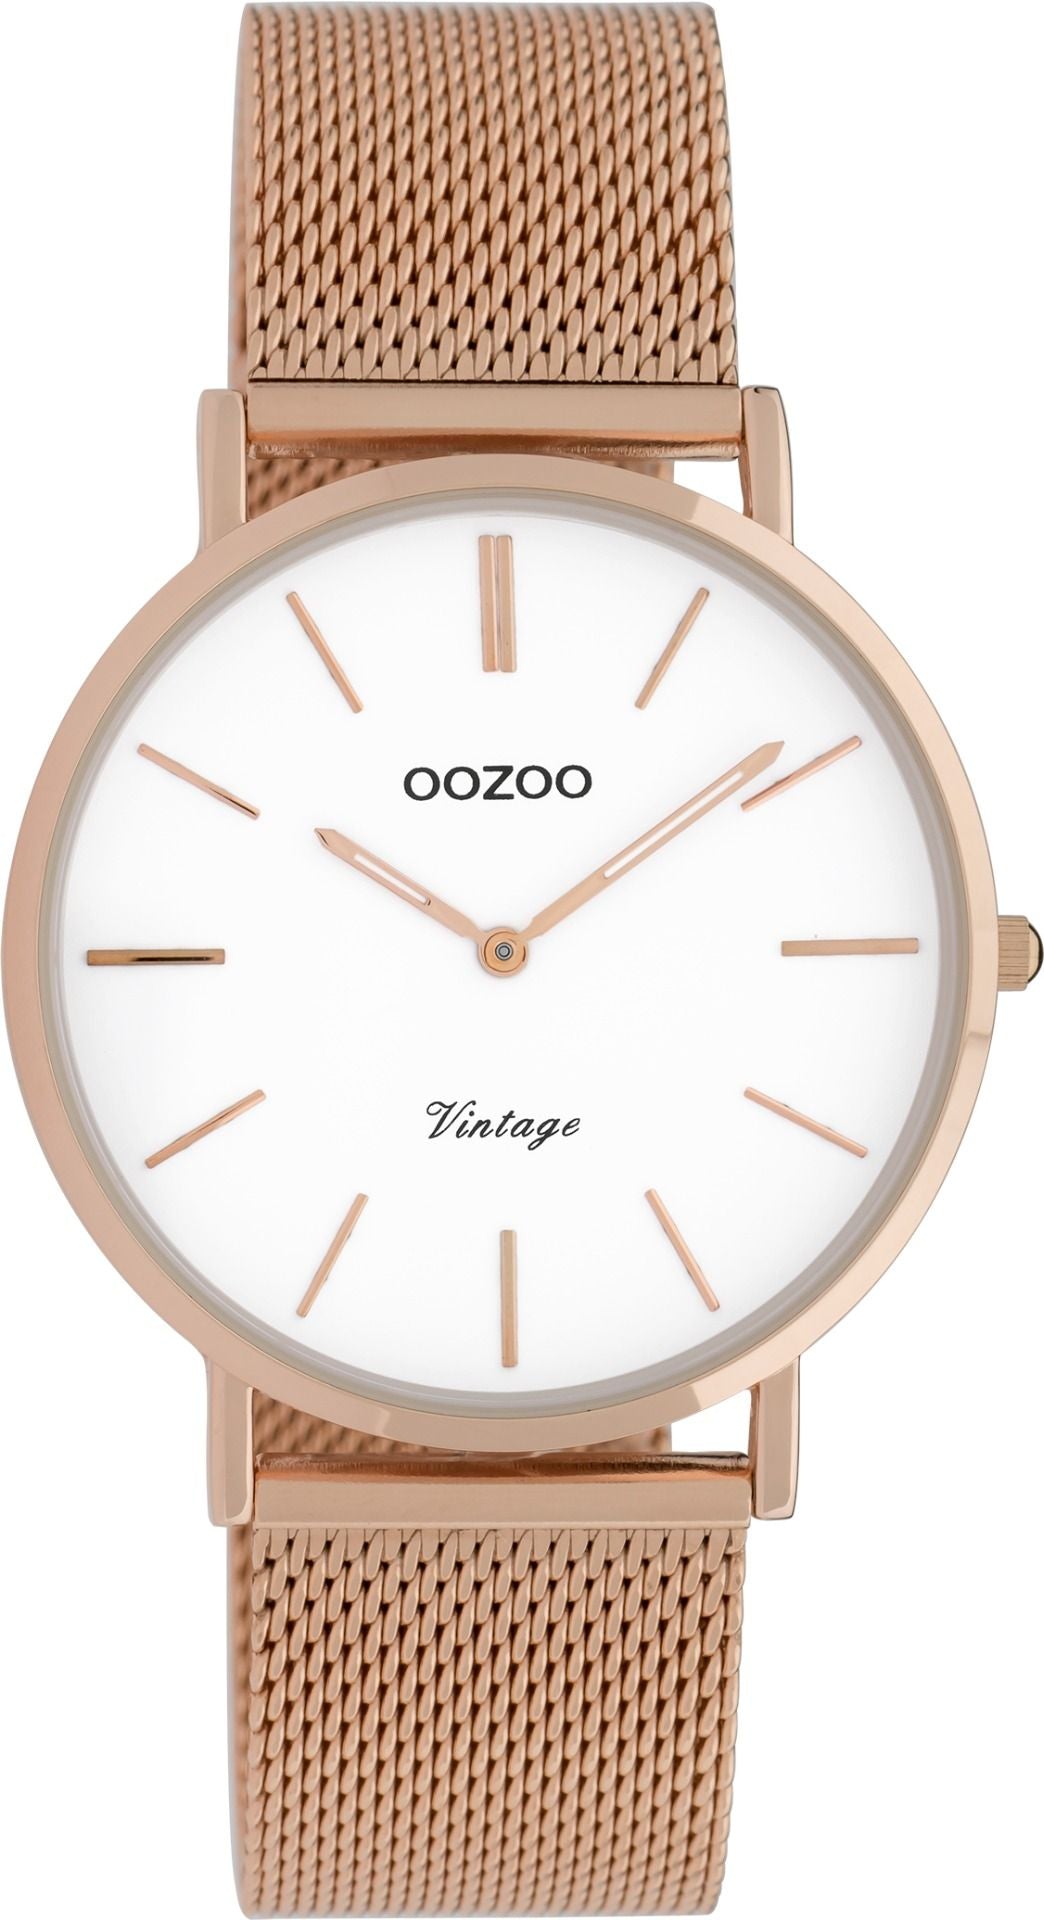 OOZOO Vintage 9918 - 36mm